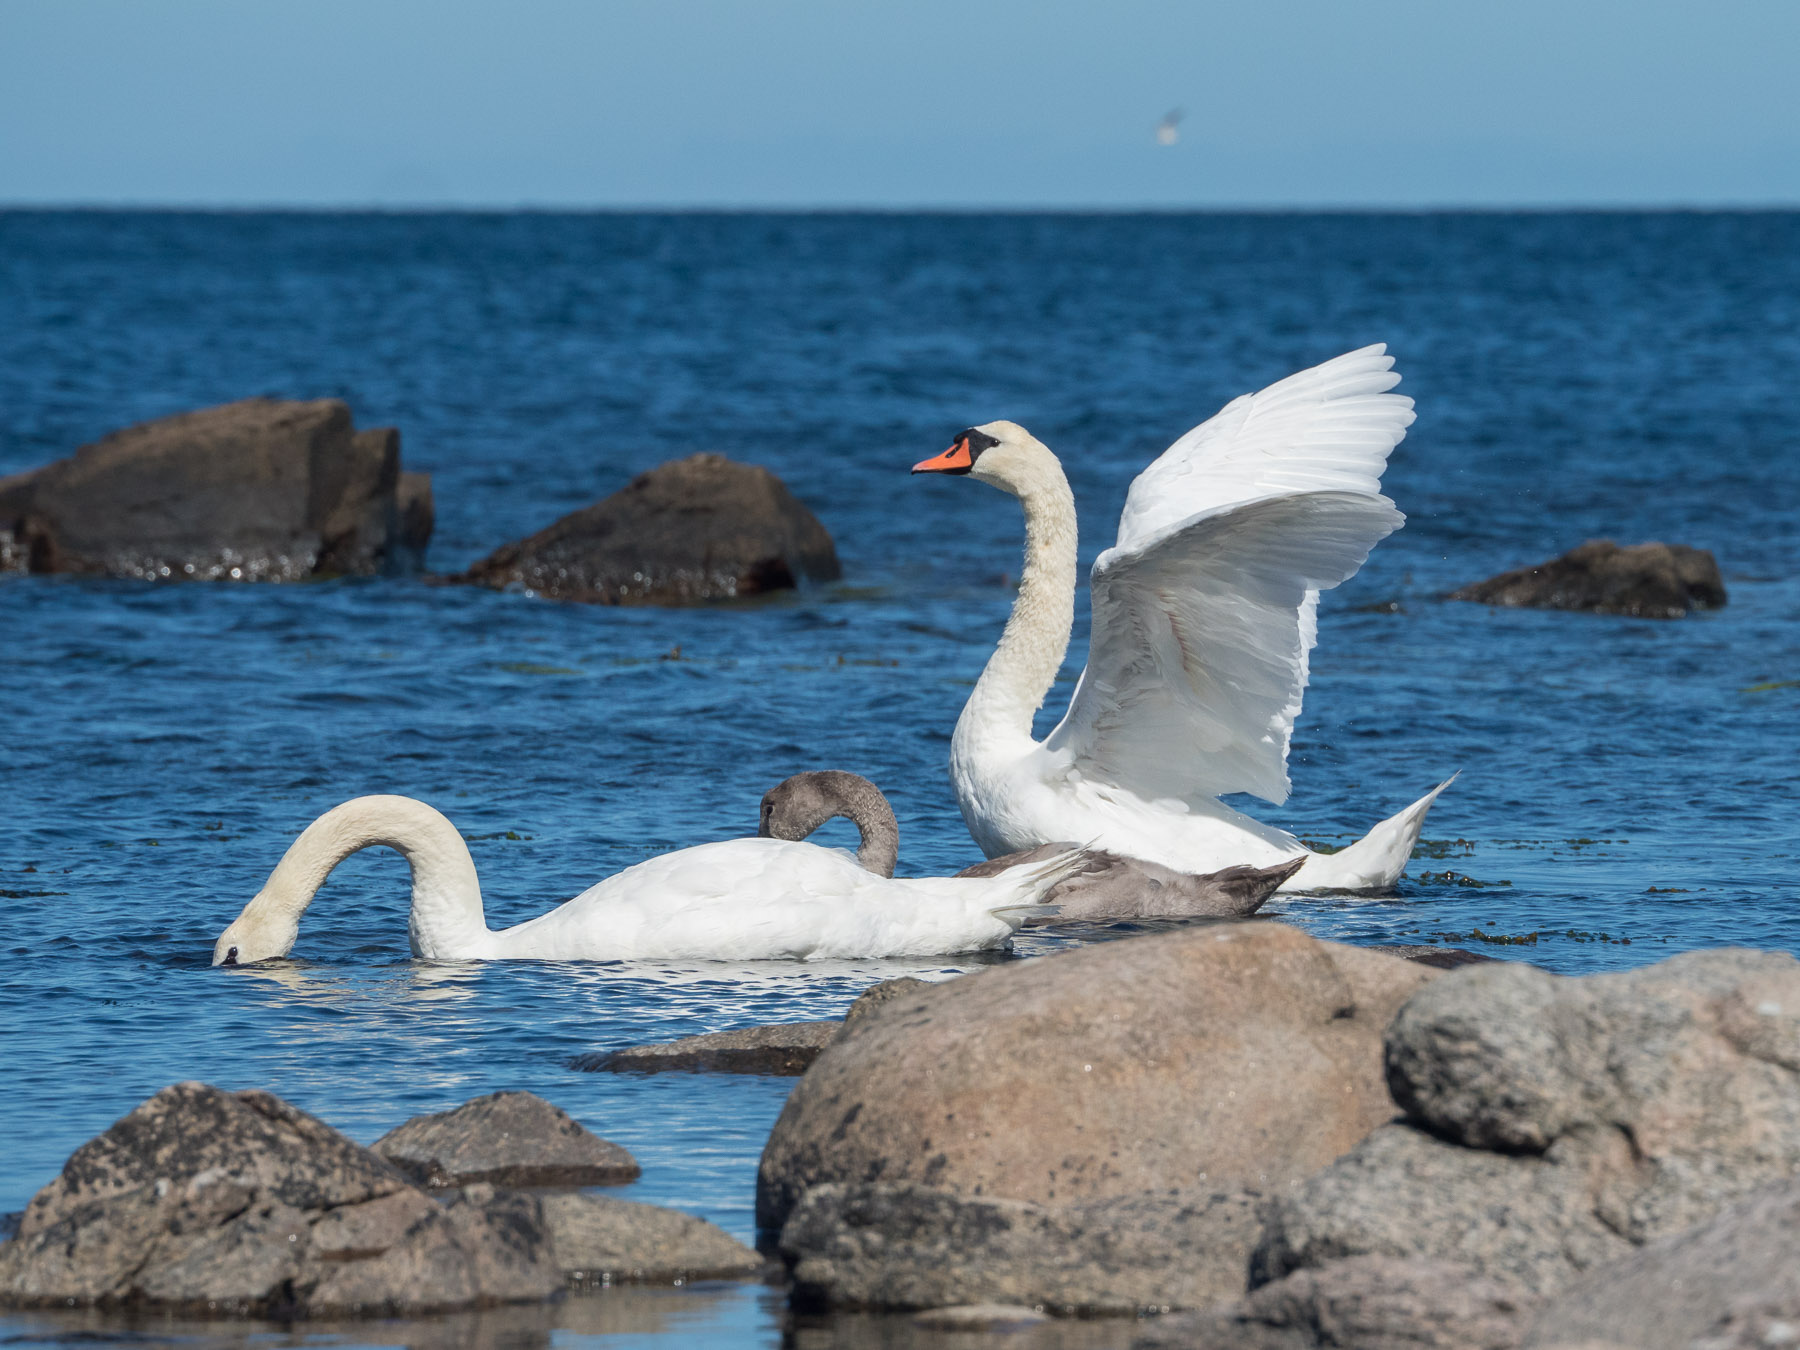 Лебедь-шипун (Cygnus olor) - вид, довольно часто встречающийся в Скандинавии, гнездящийся на многих внутренних озёрах и вдоль морского побережья. Балтийское море, остров Борнхольм, Дания, август 2019 года. Автор фото: Сутормина Марина